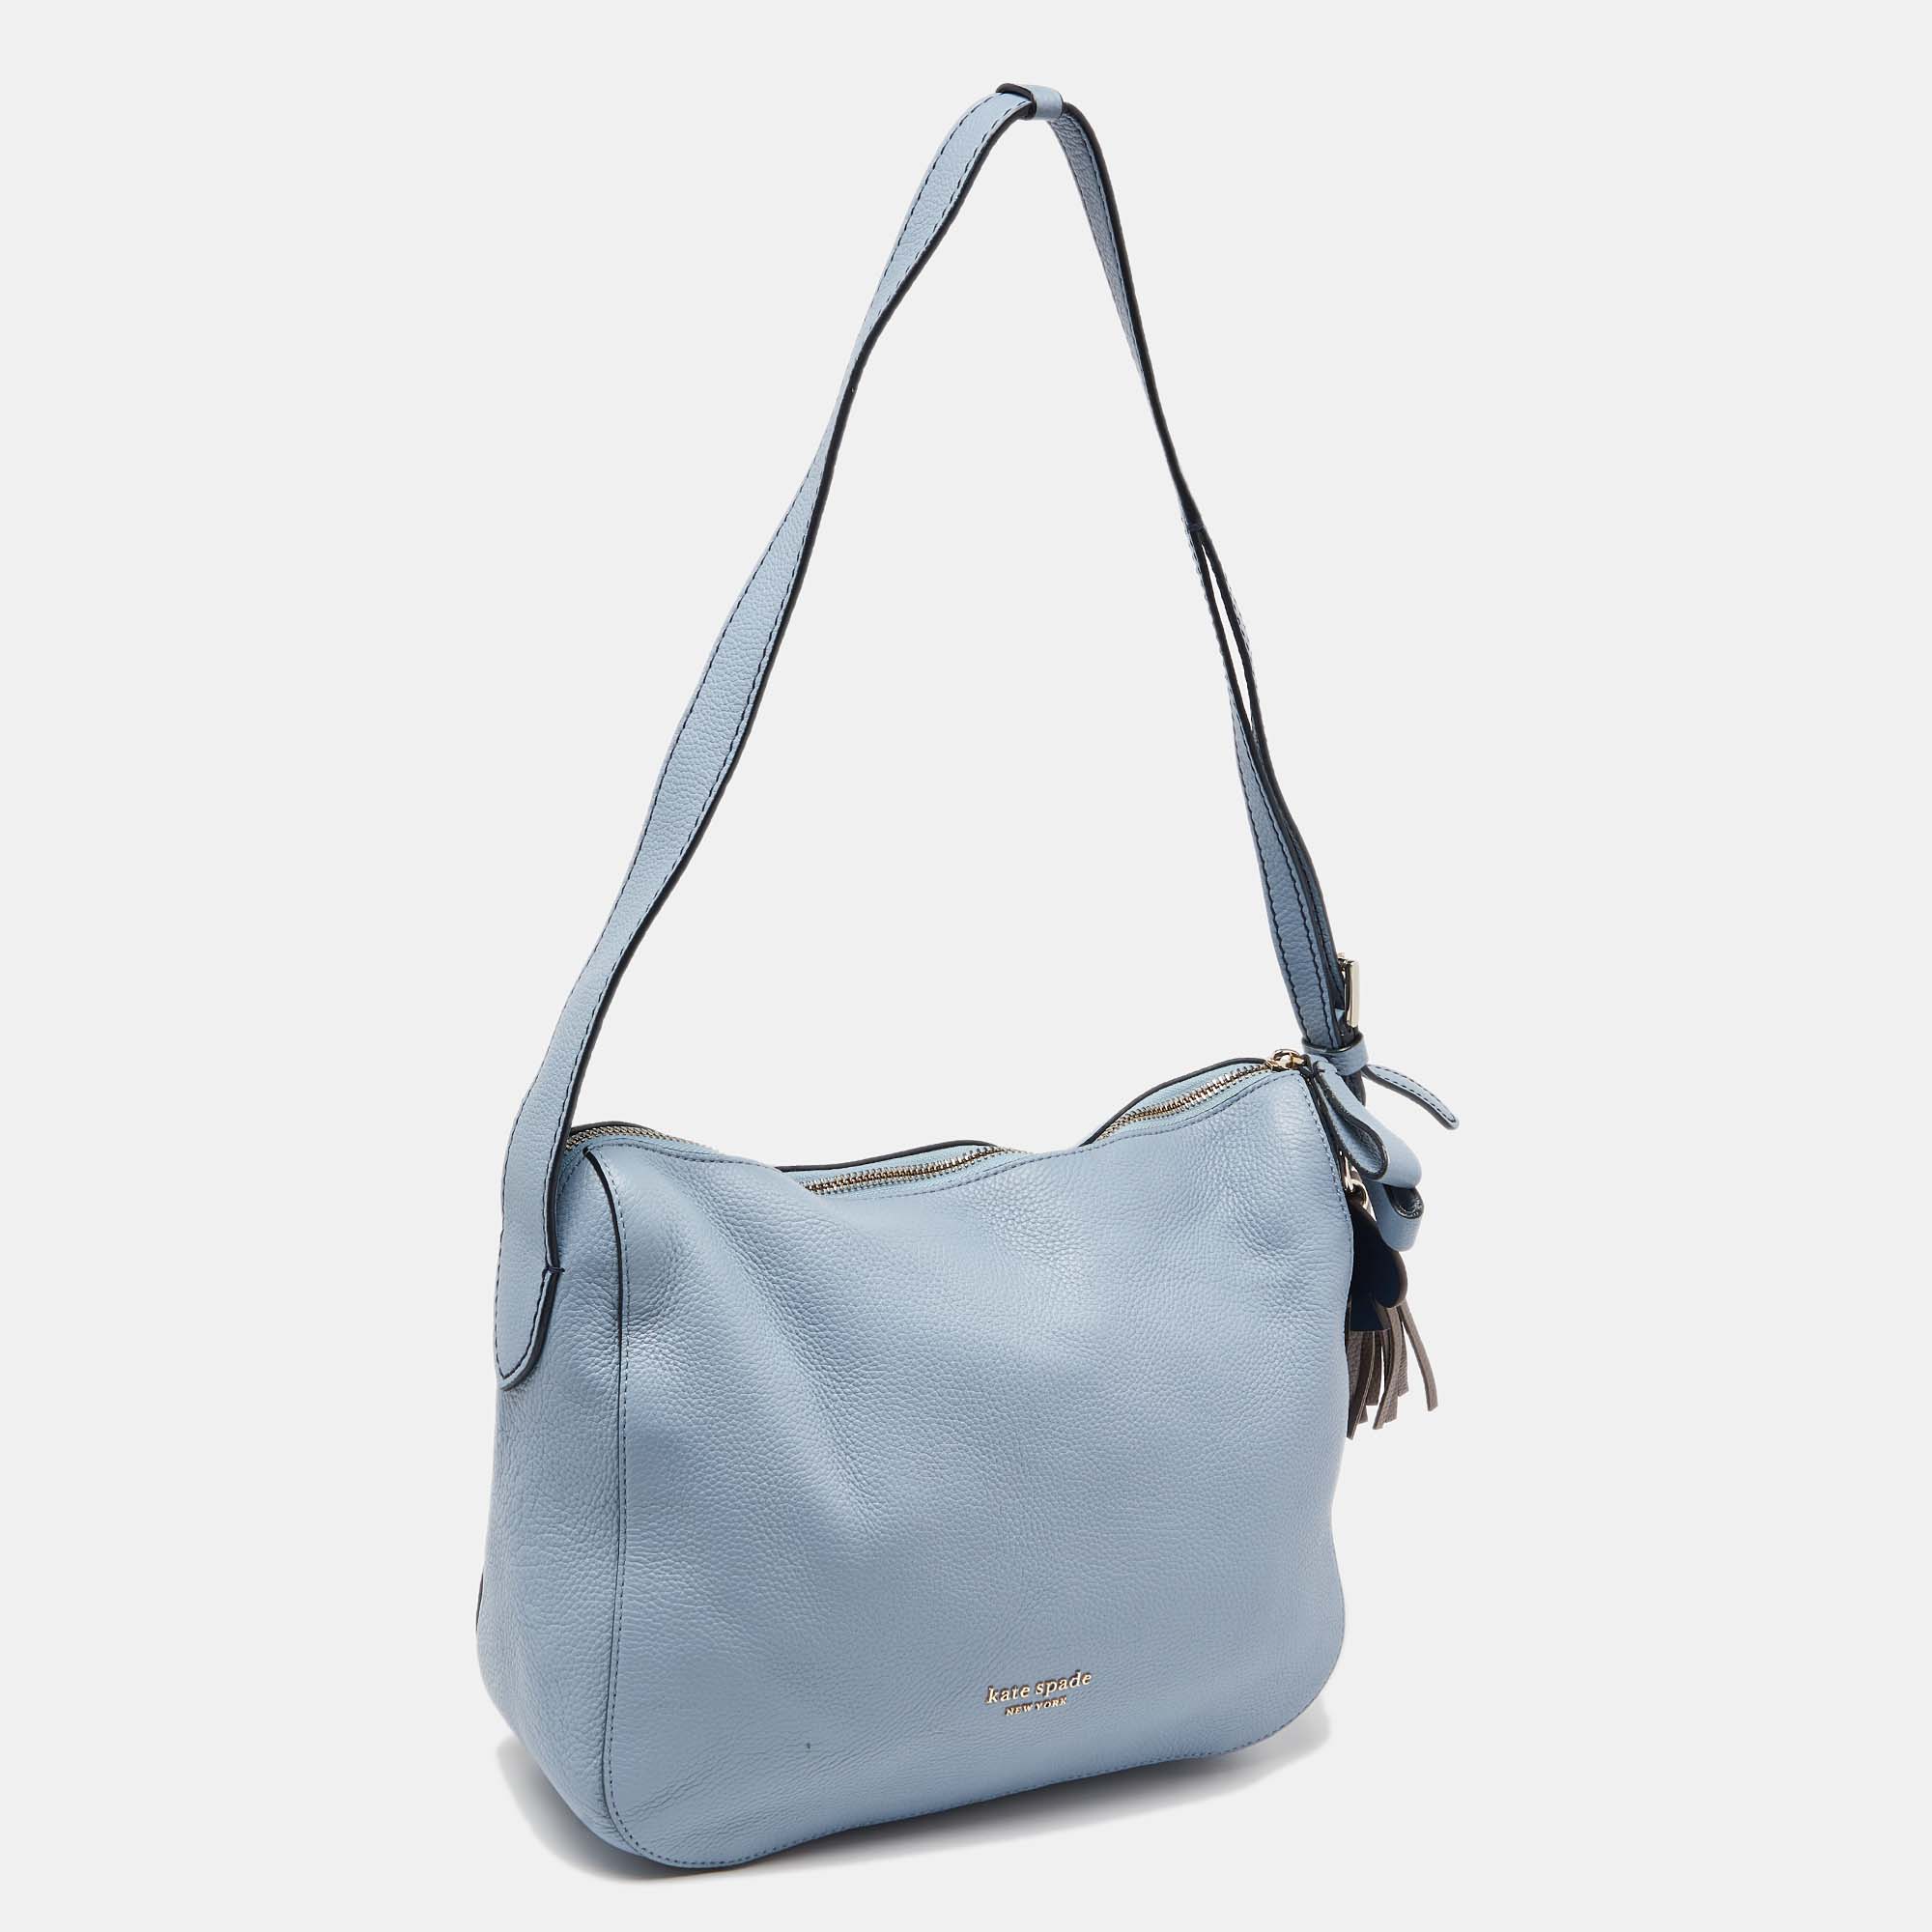 Kate Spade Blue Leather Zip Shoulder Bag